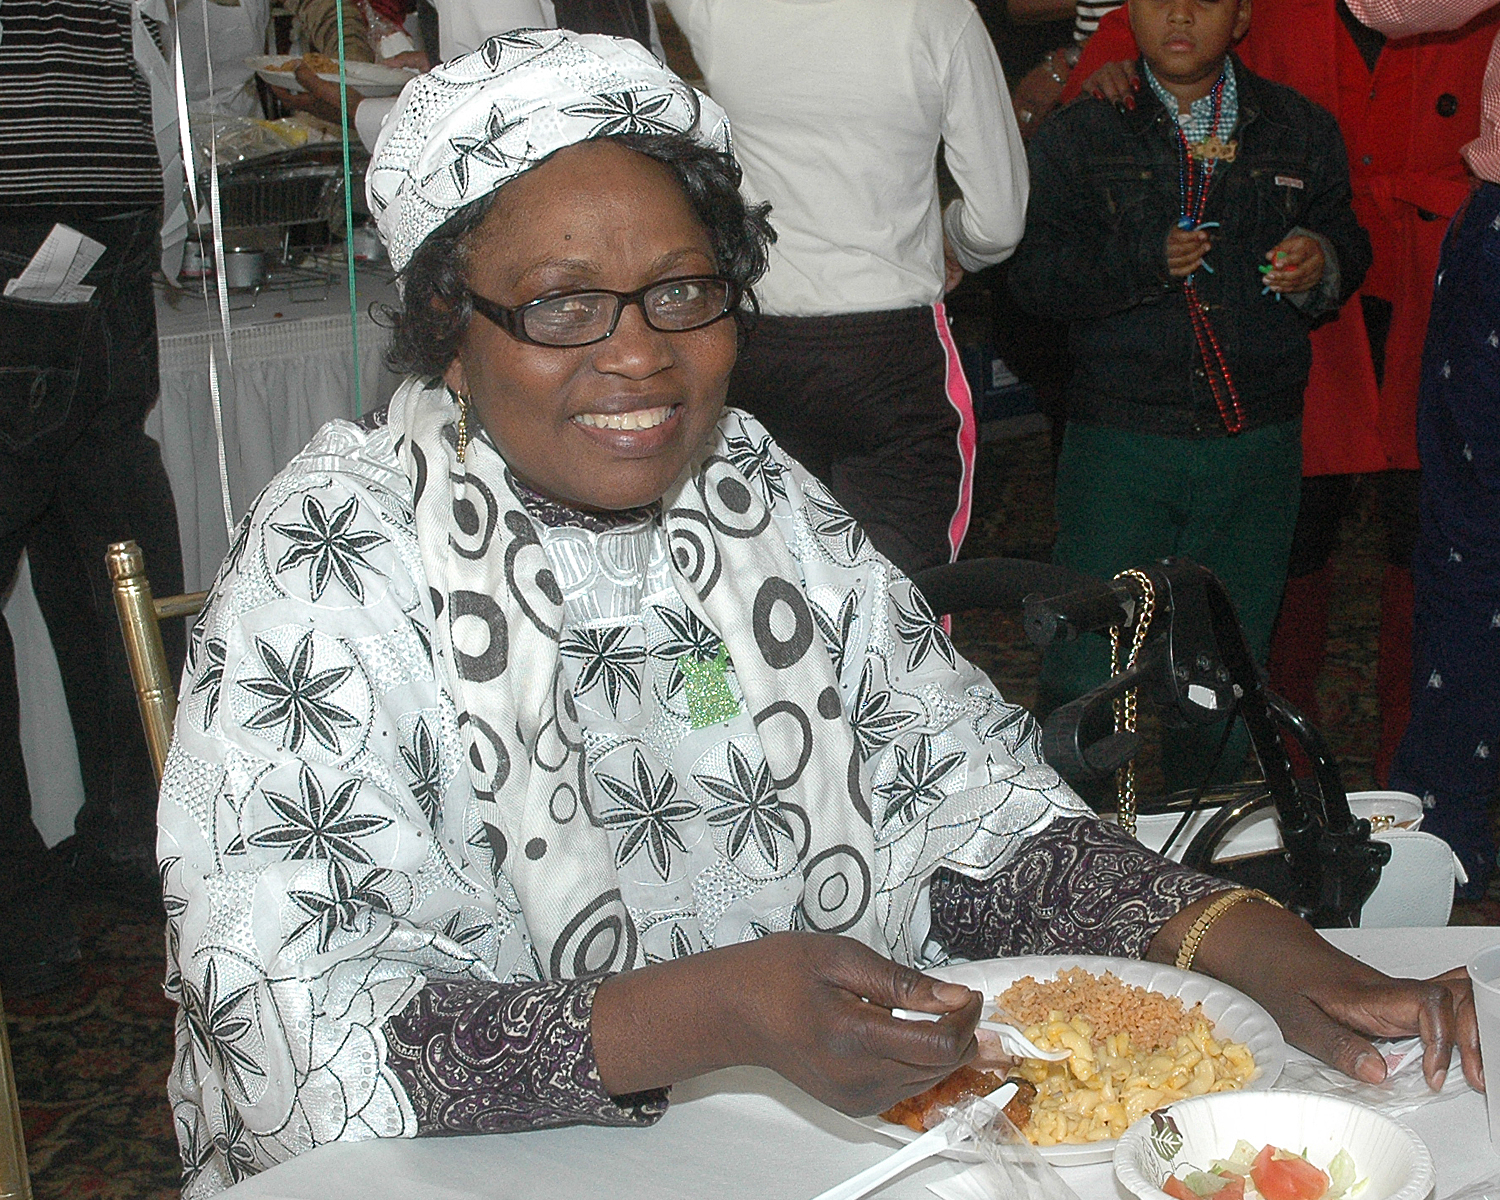 An attendee enjoying her meal